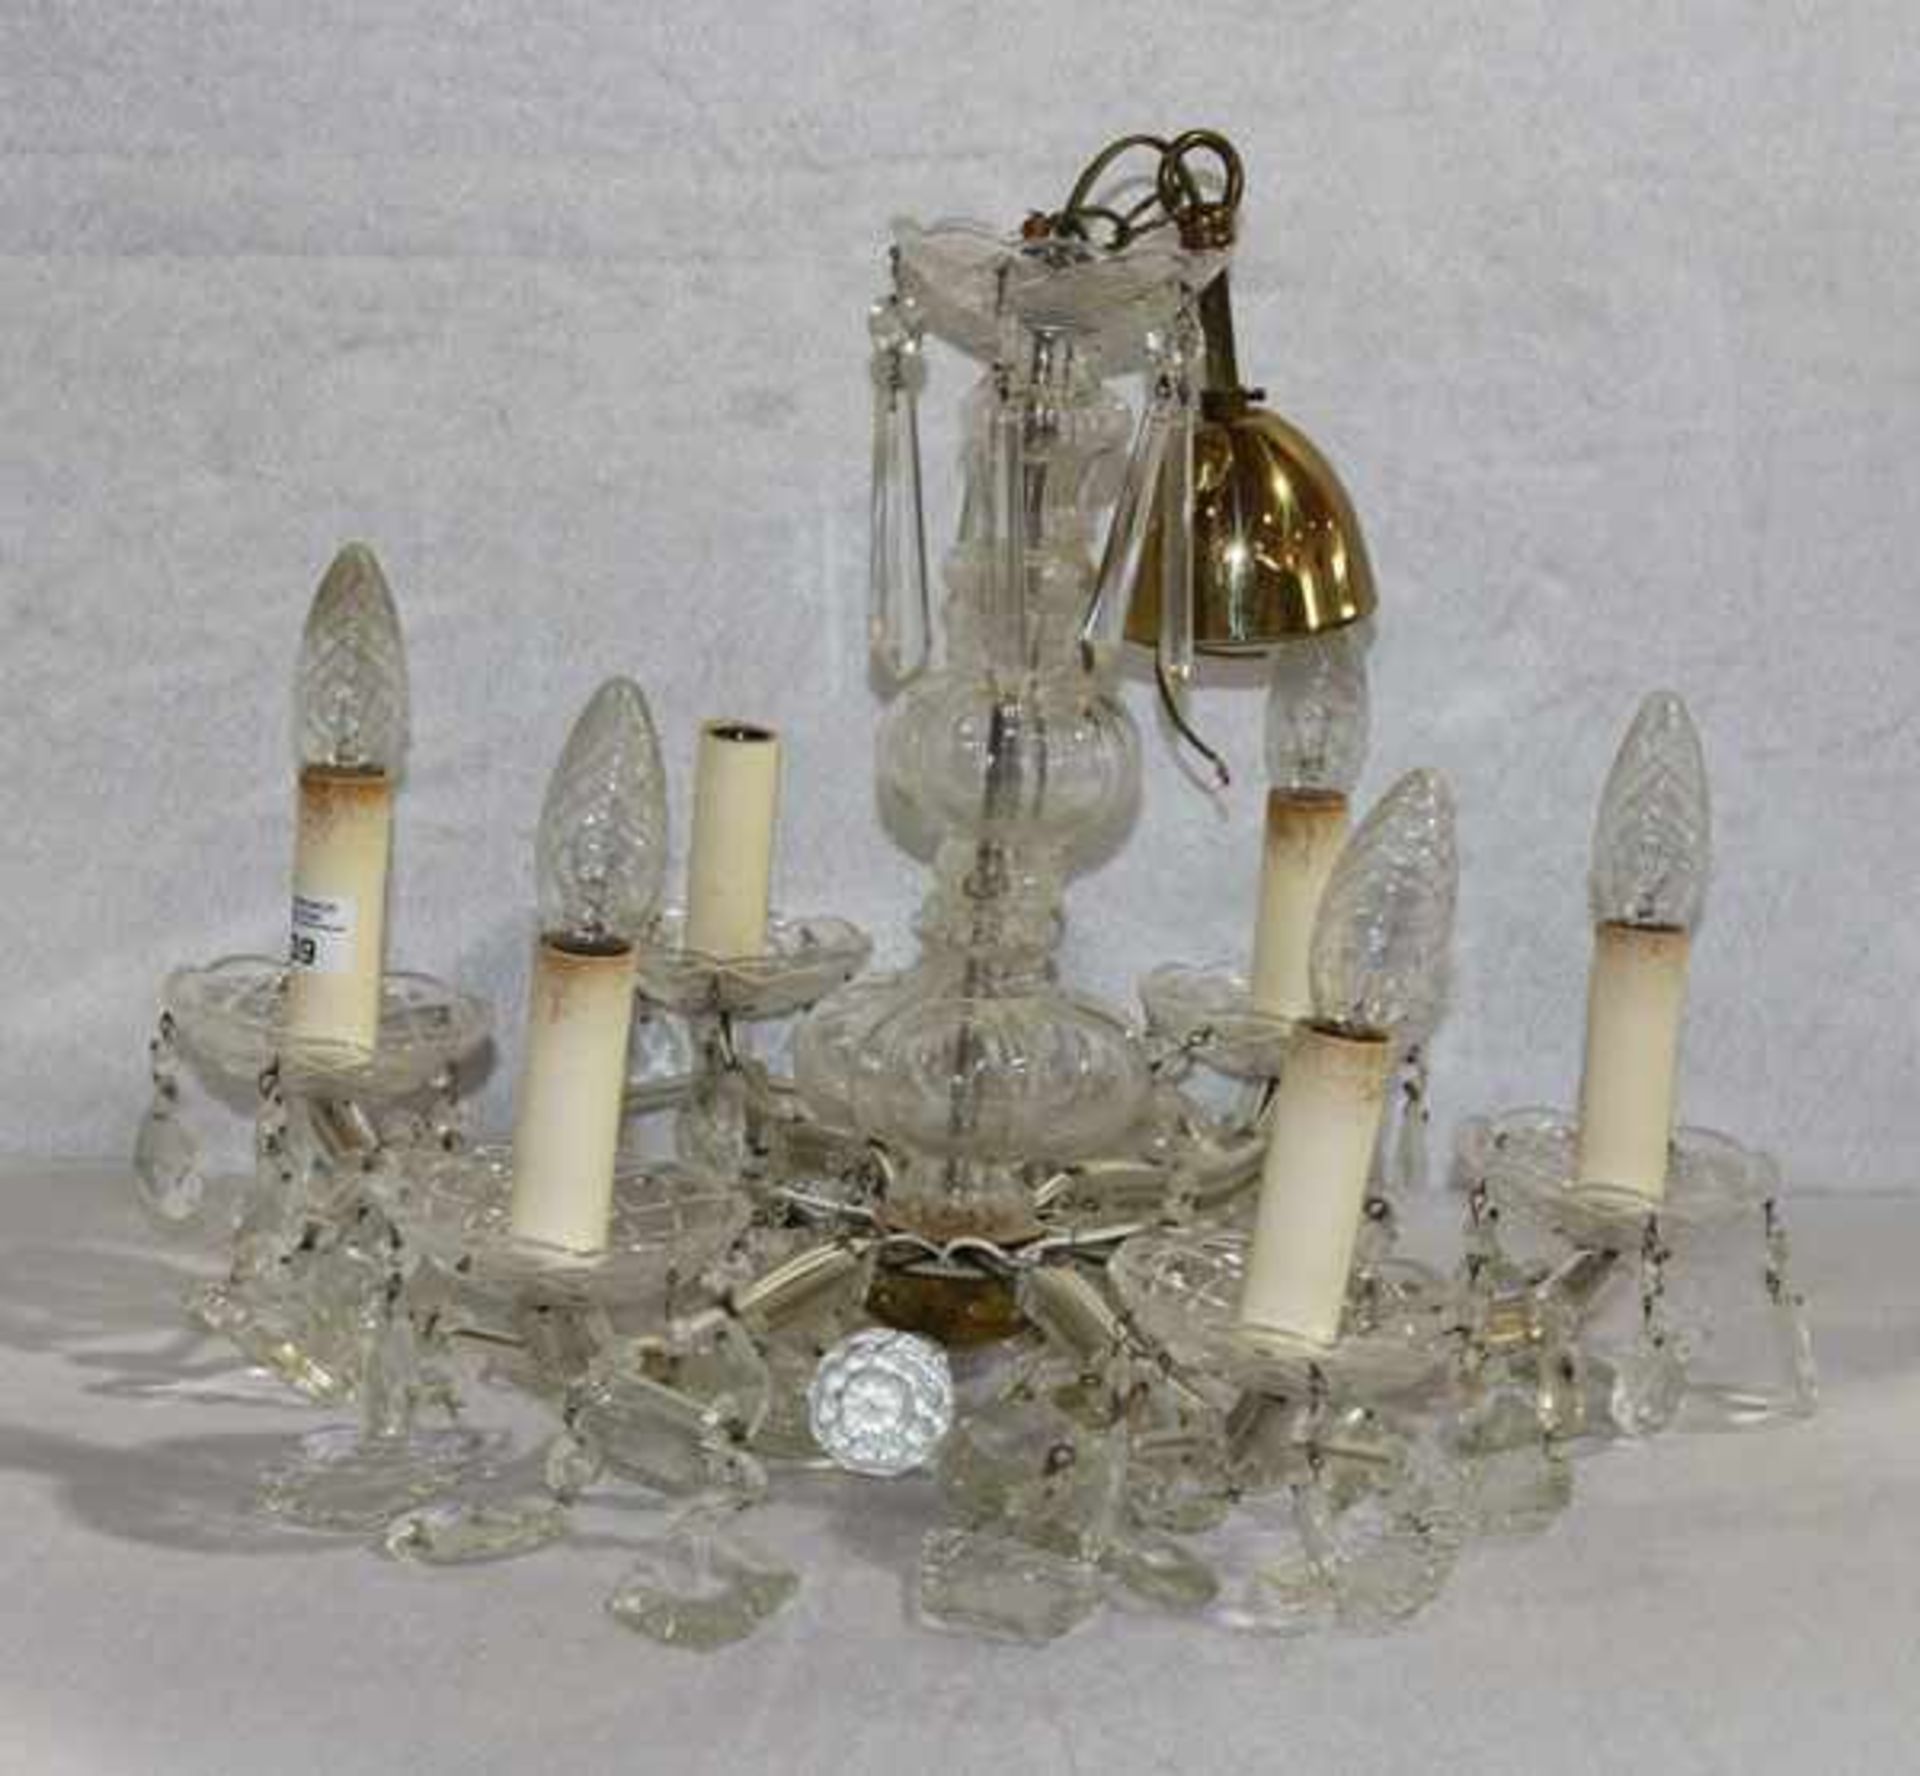 Kristall Hängelampe, 6-armig mit Glasprismen, H 60 cm, D 60 cm, Gebrauchsspuren